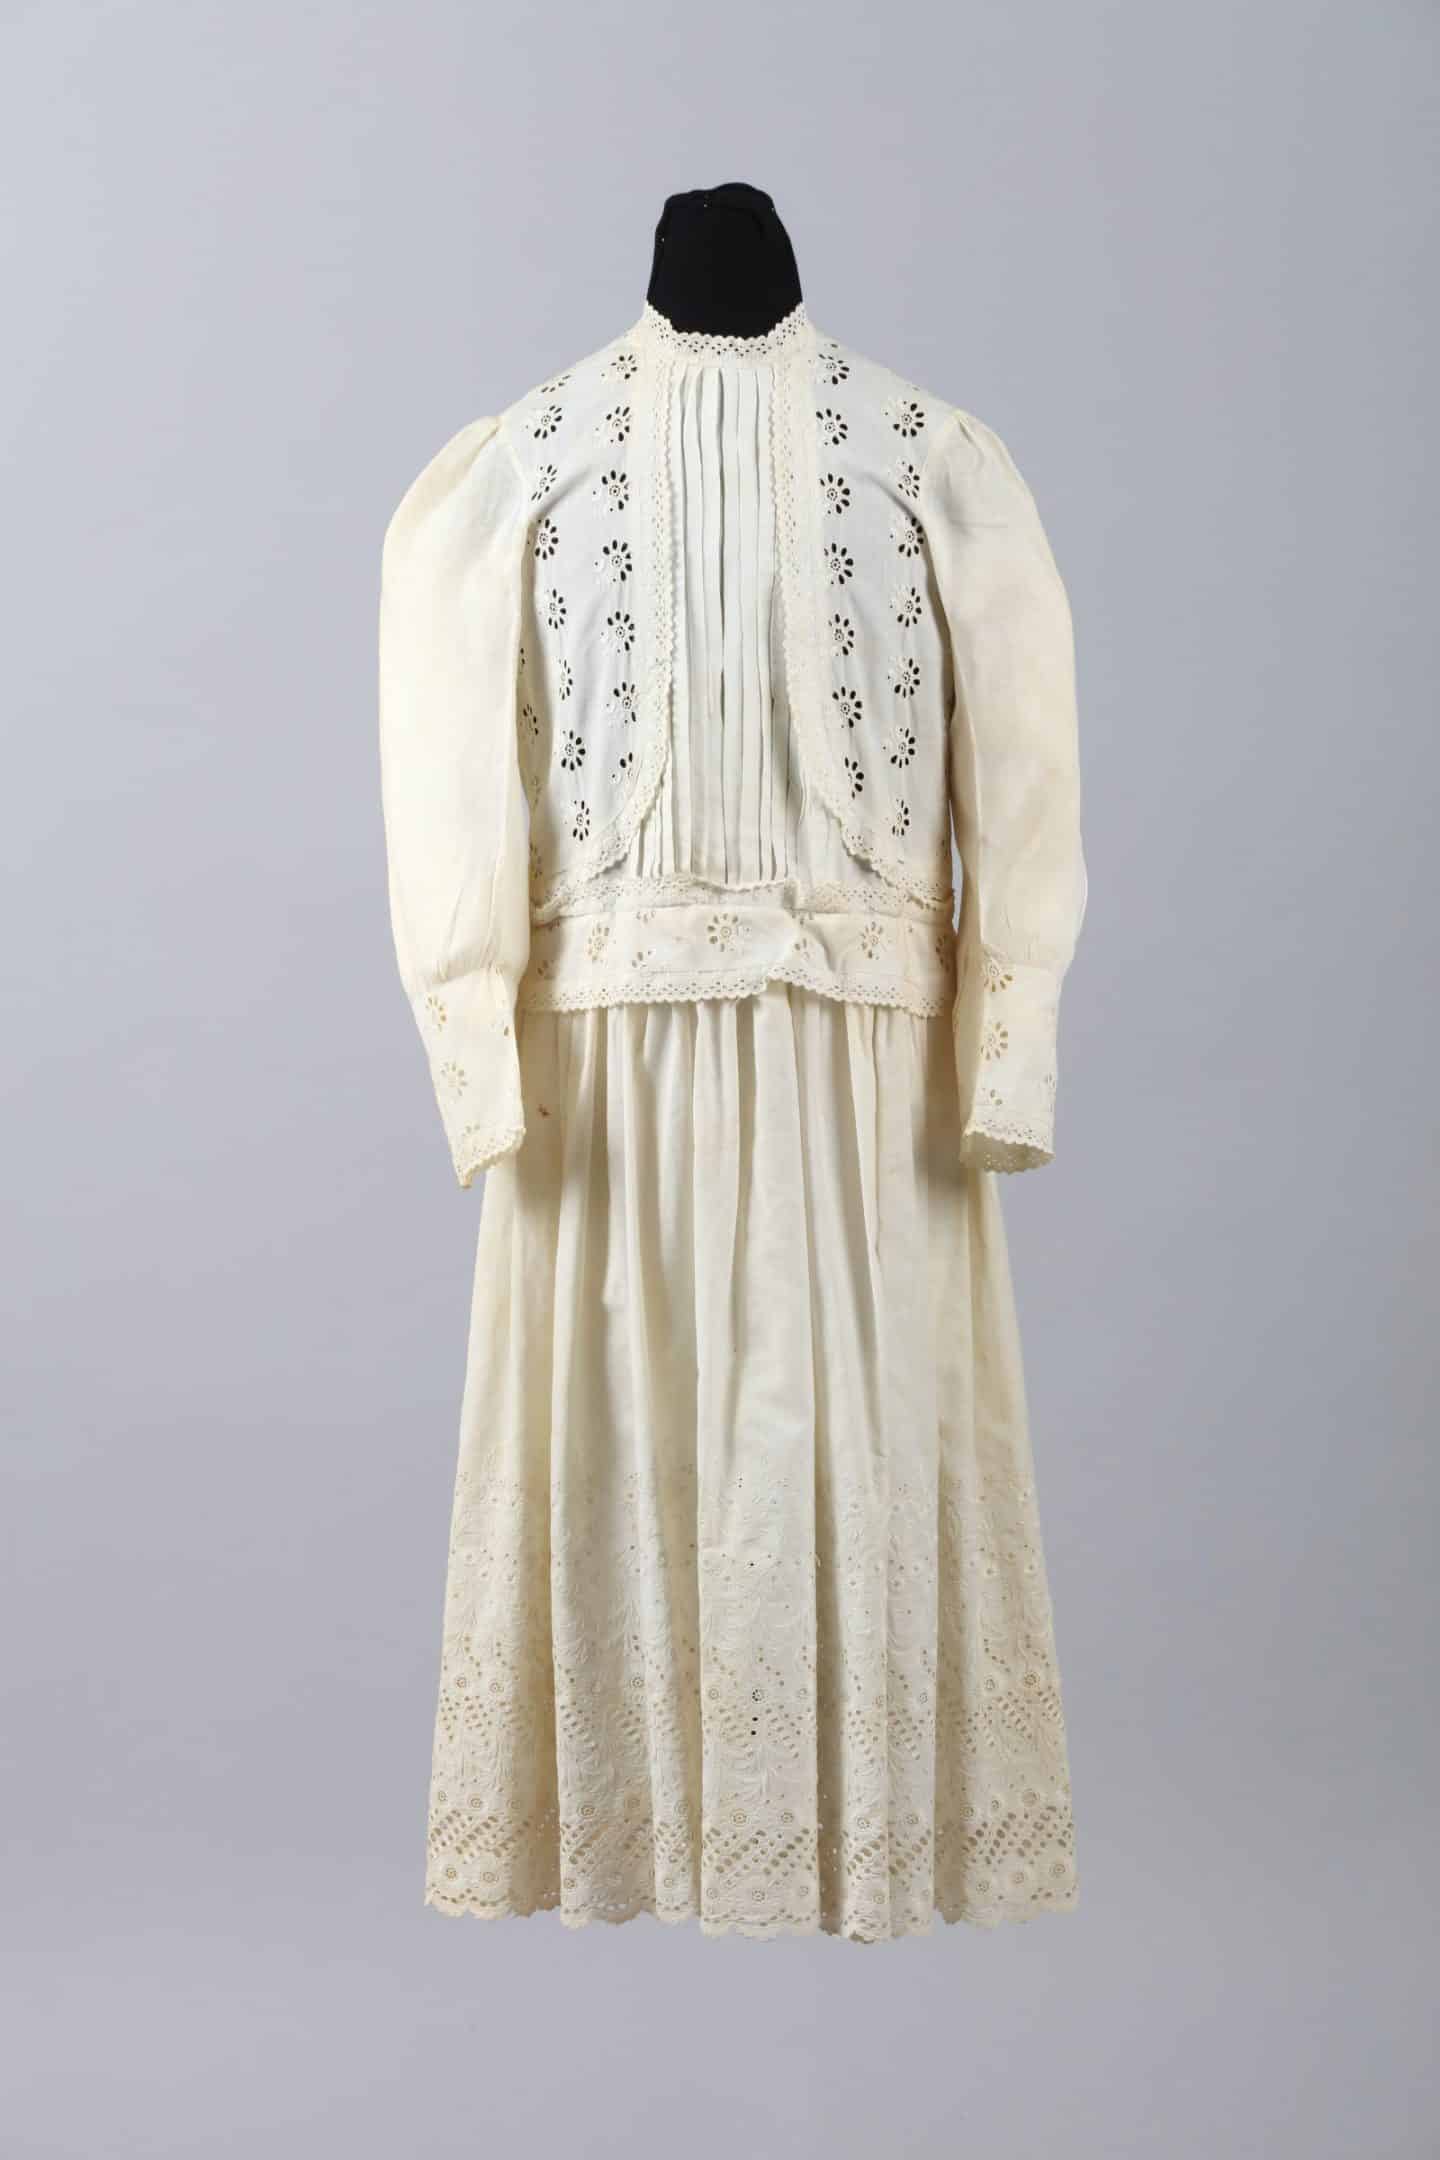 Child’s Dress, around 1893, cotton